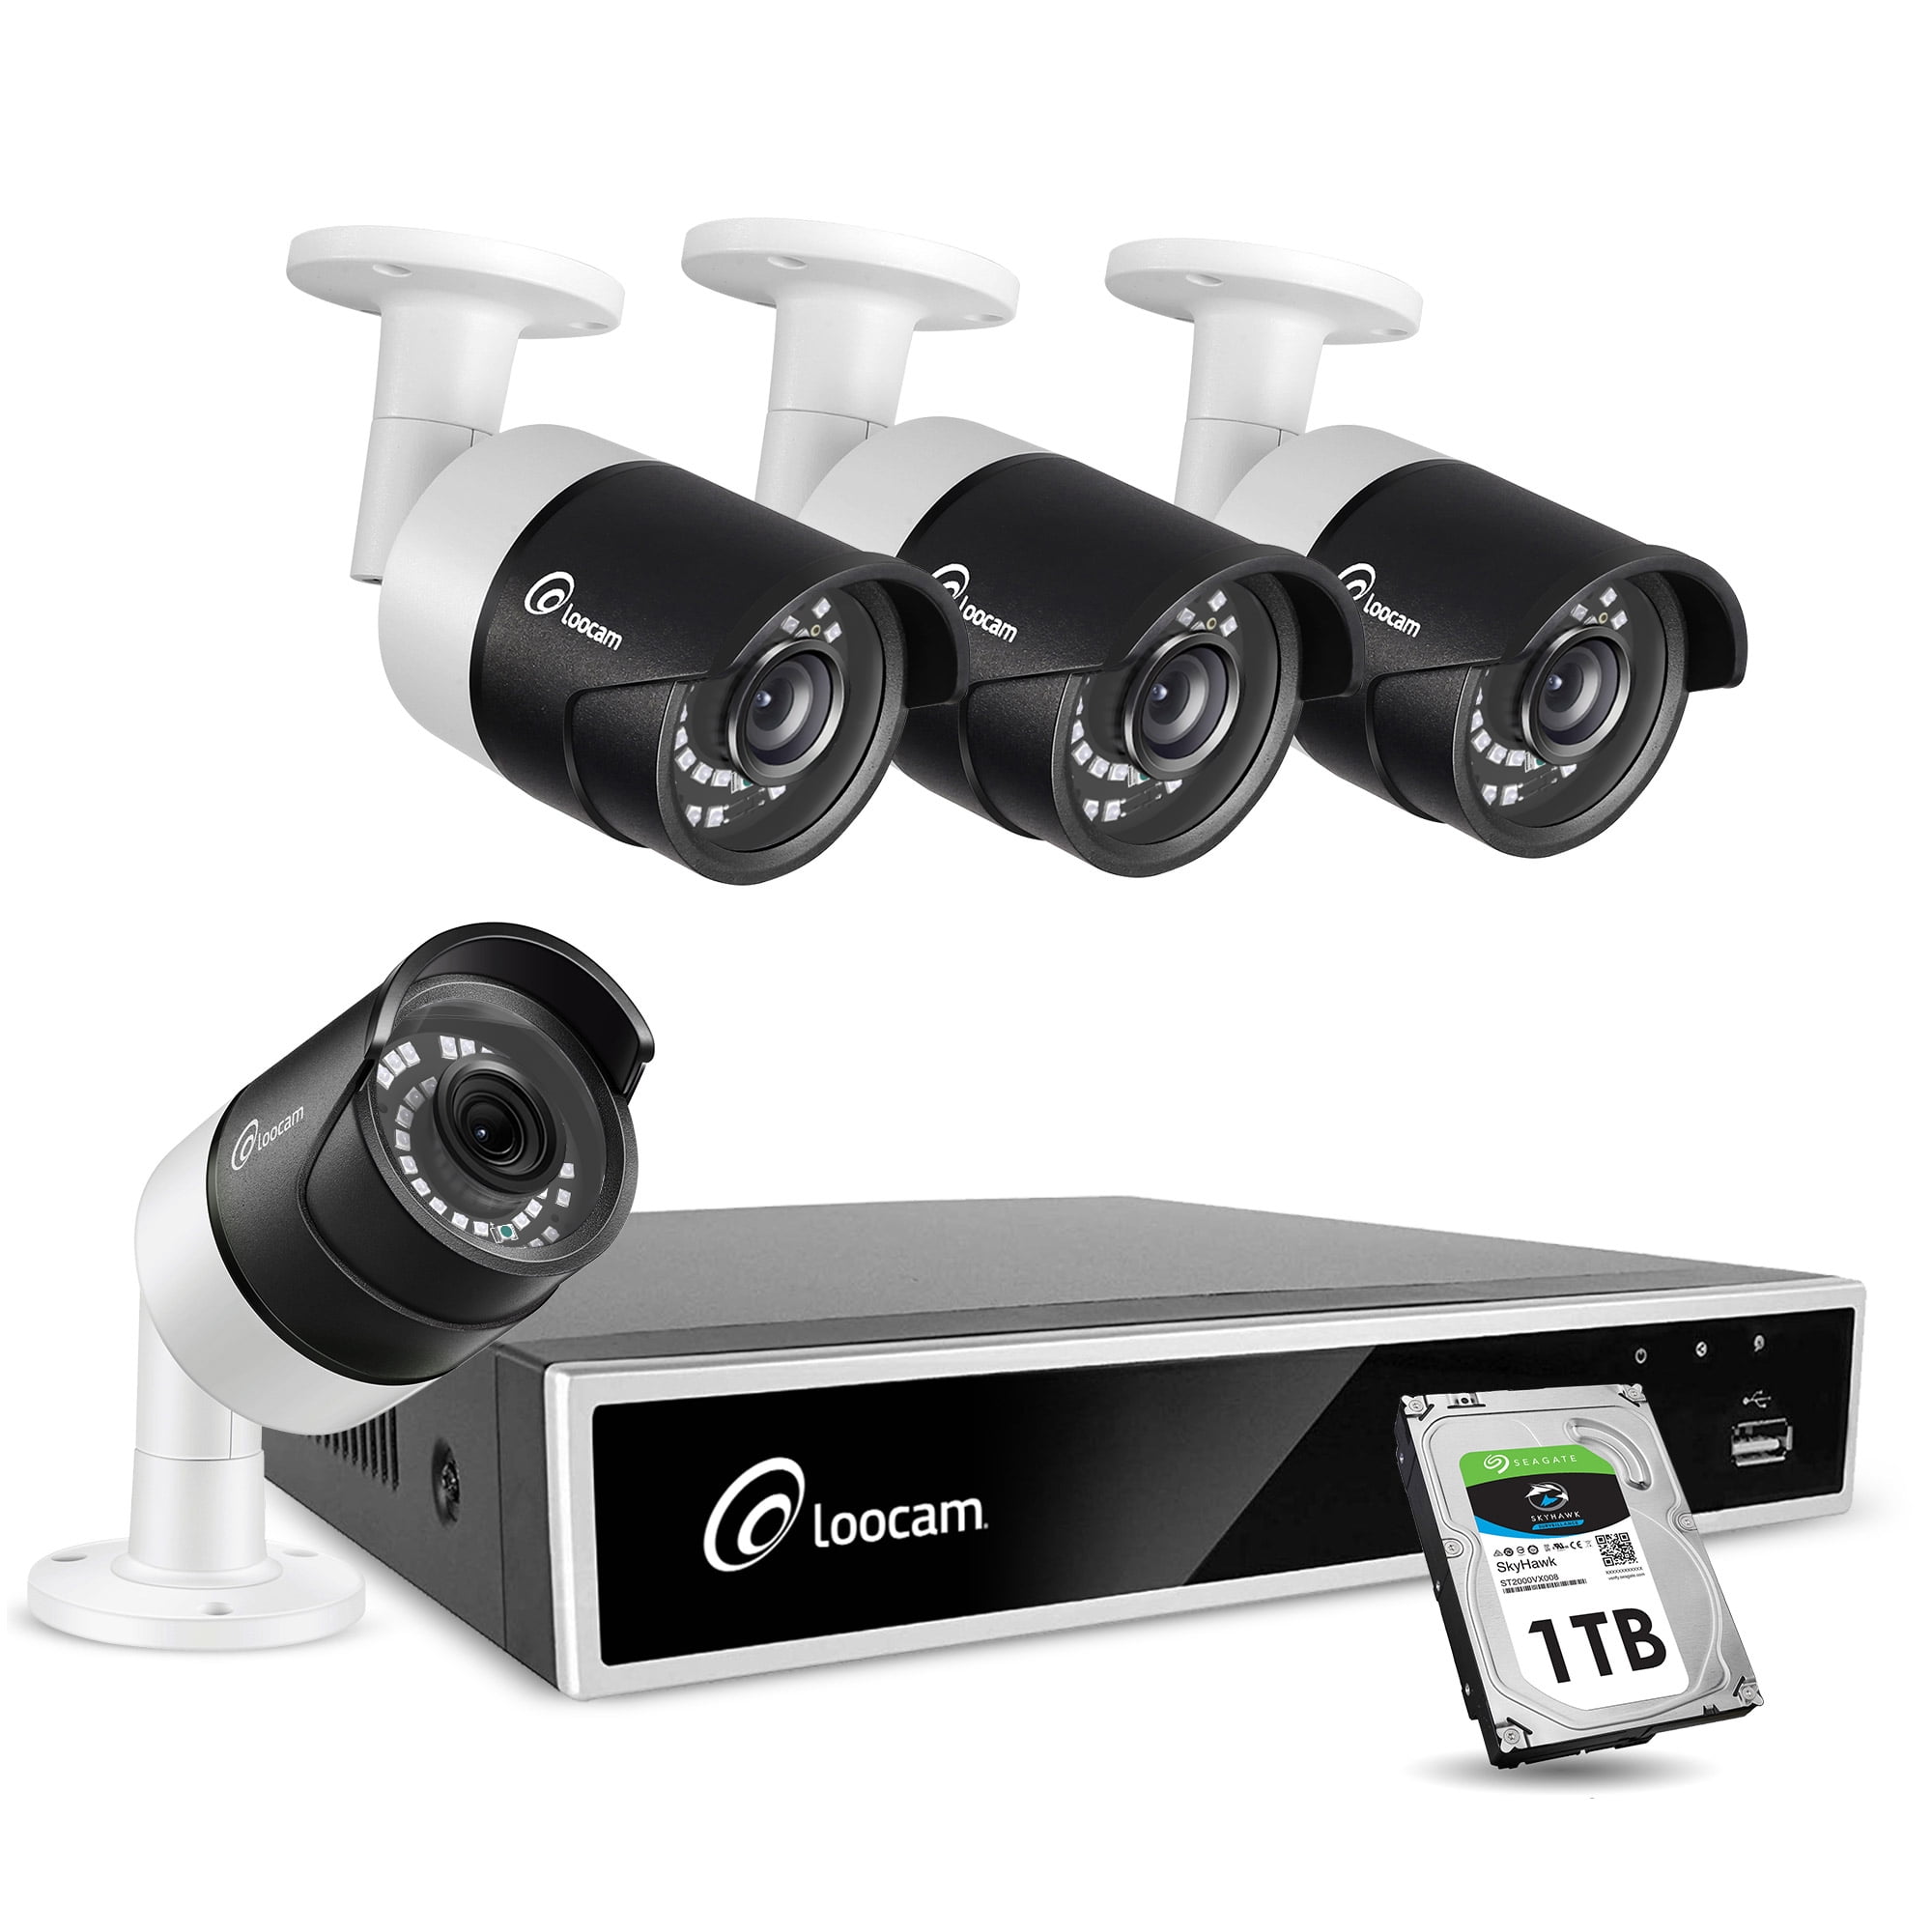 loocam security camera reviews